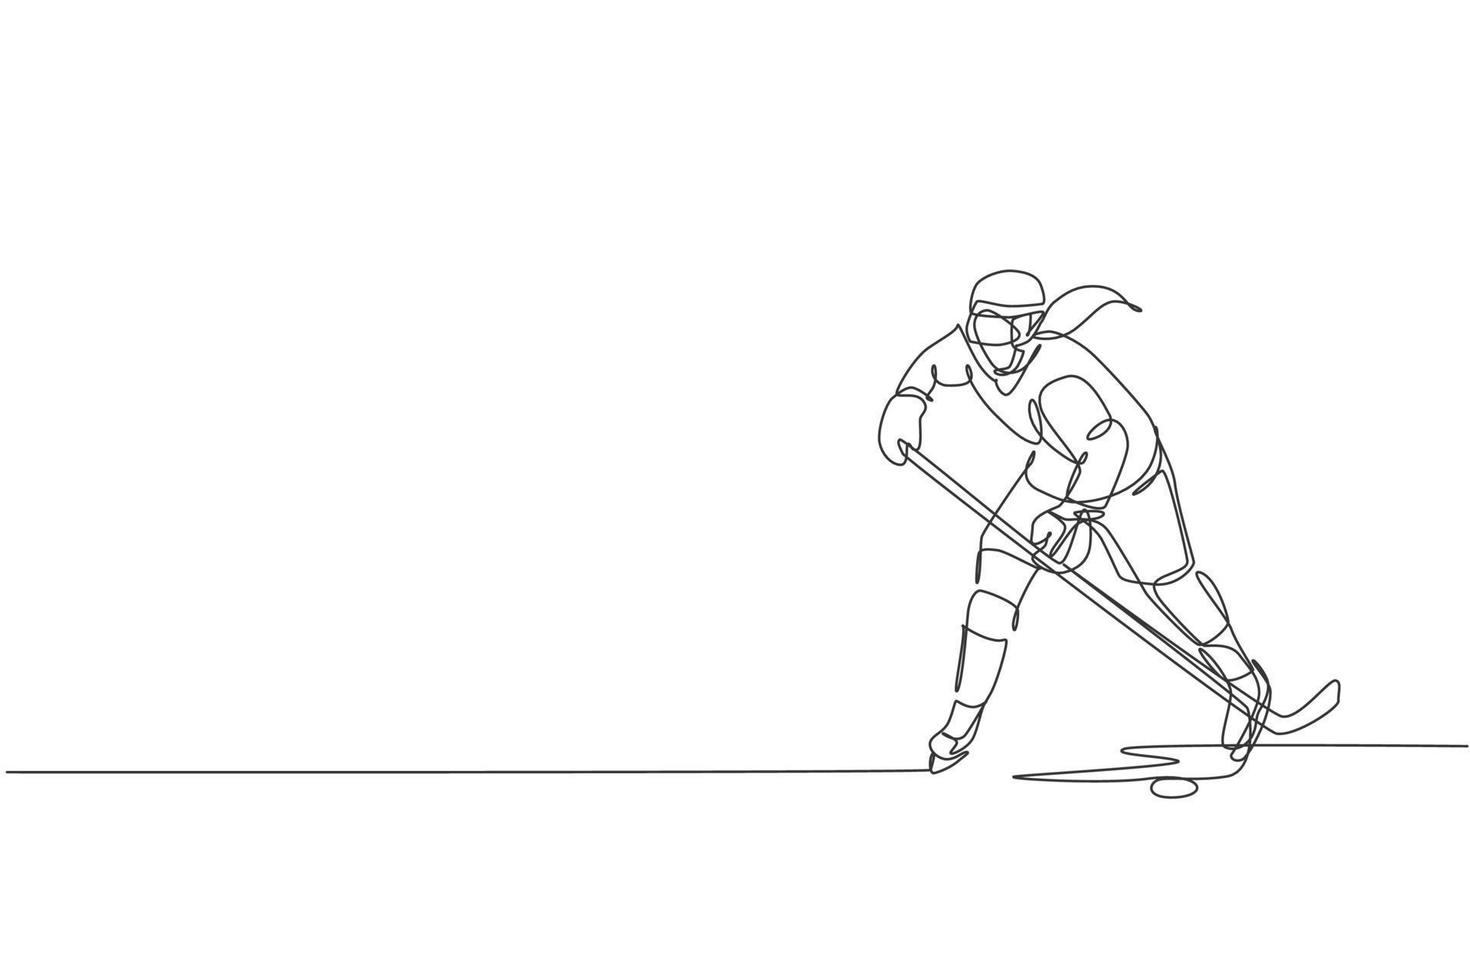 un disegno a linea singola di un giovane giocatore di hockey su ghiaccio in azione per giocare a una partita competitiva sul grafico dell'illustrazione vettoriale dello stadio della pista di pattinaggio. concetto di torneo sportivo. moderno disegno a linea continua